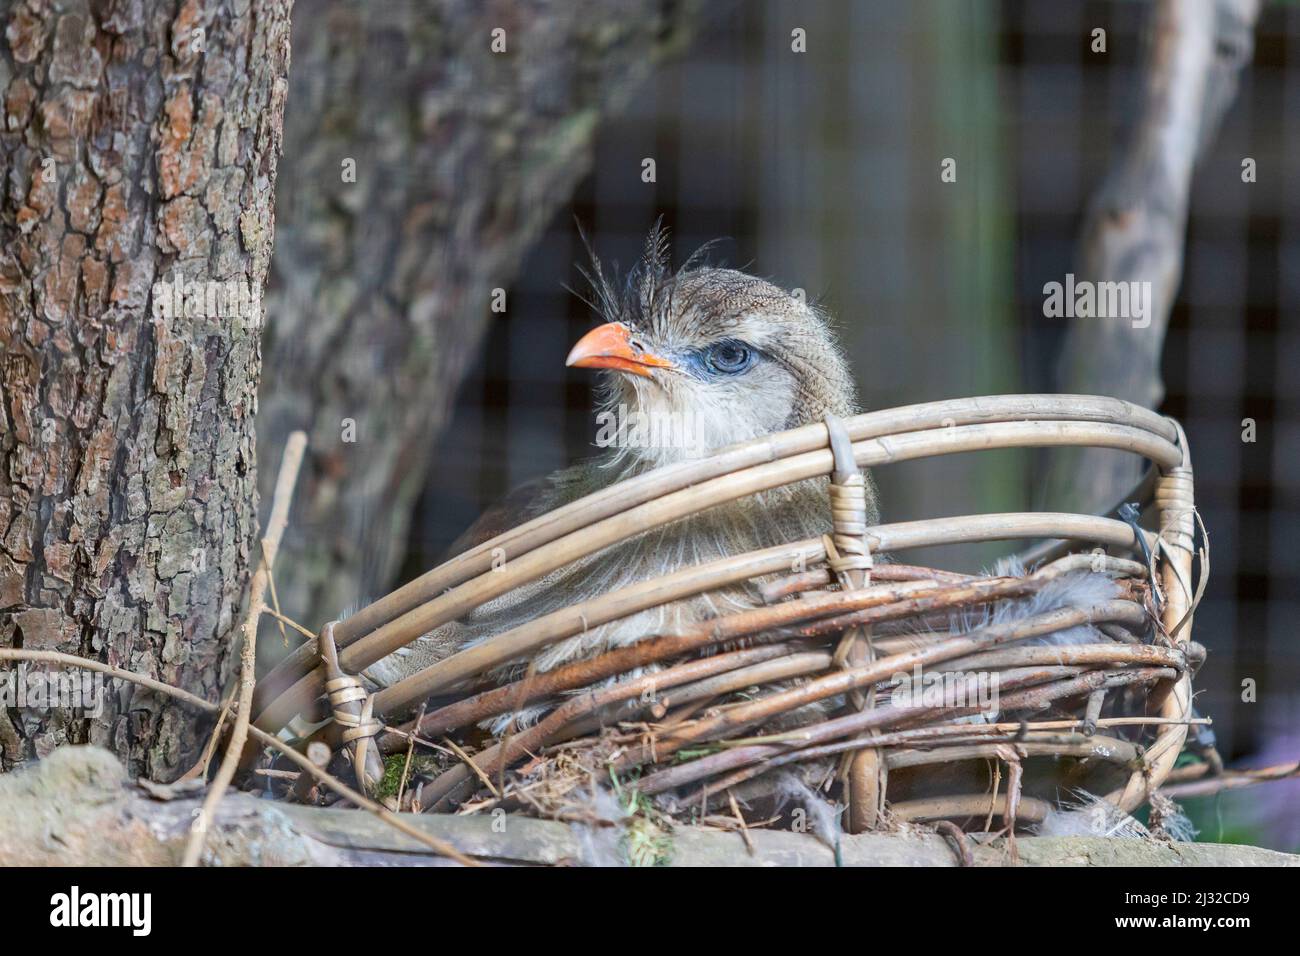 Retrato de un pájaro de pico rojo Seriema sentado en un nido. El fondo es agradable bokeh. Foto de stock